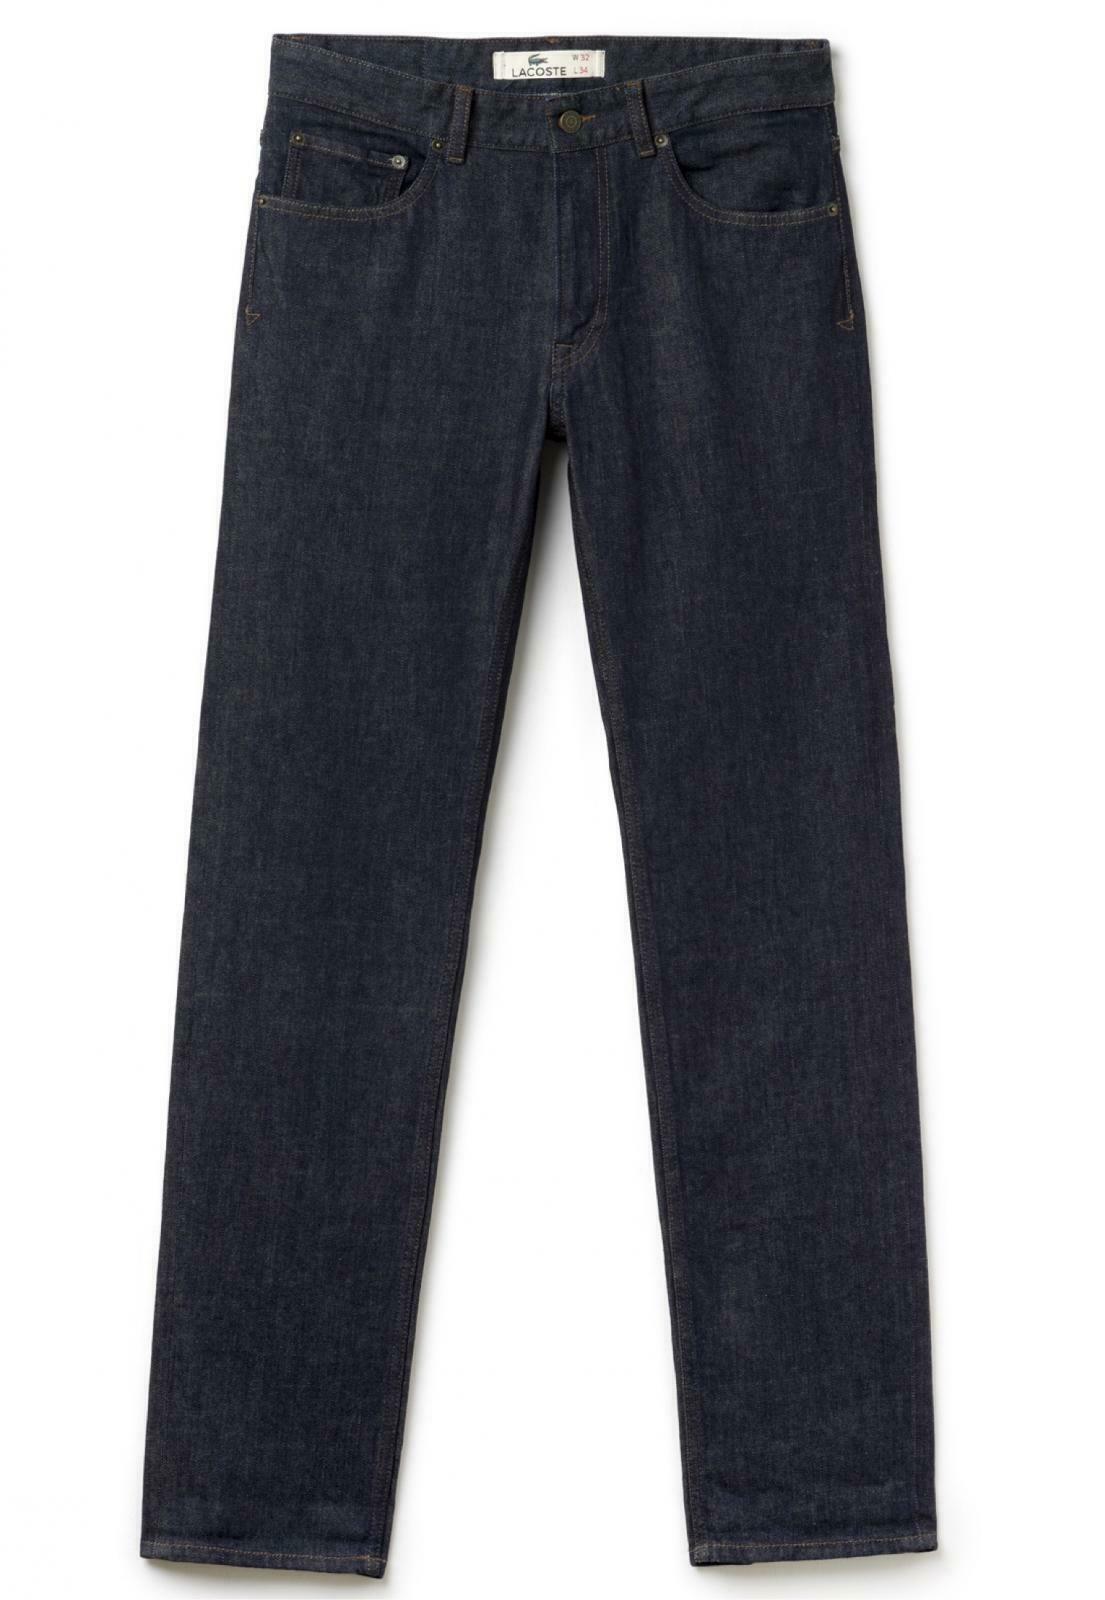 lacoste mens jeans